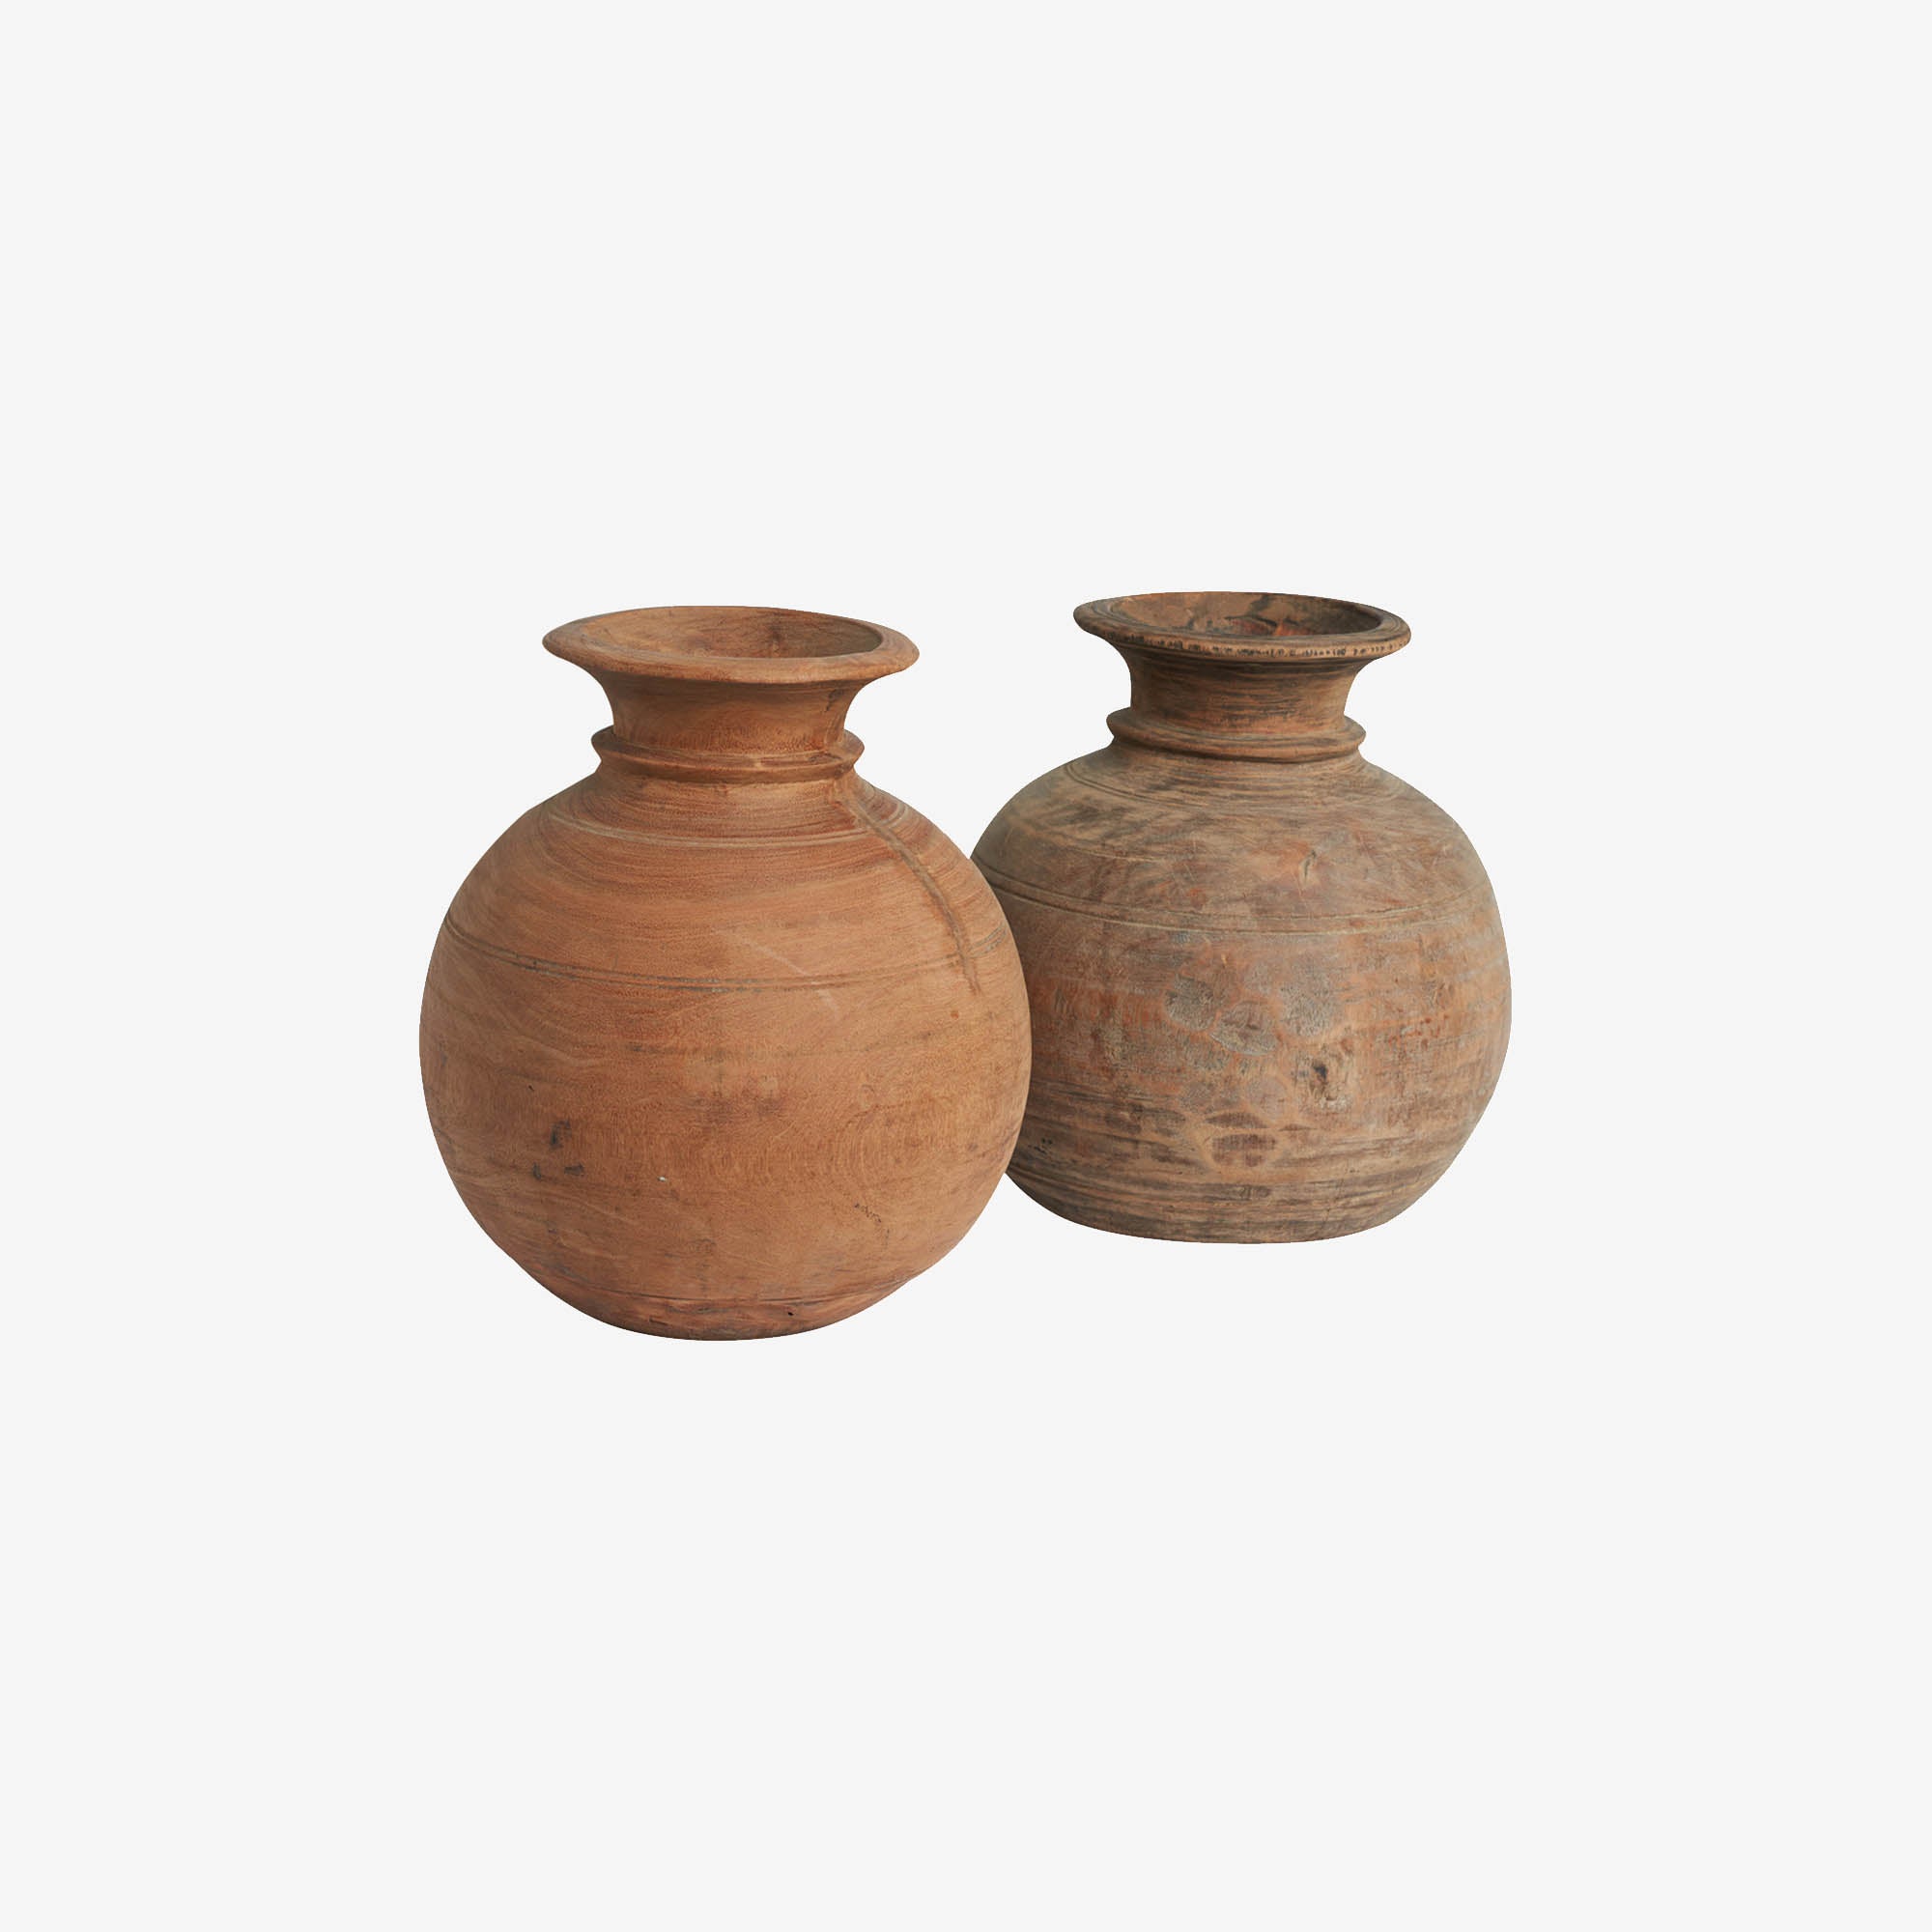 Wooden pot/vase – wood